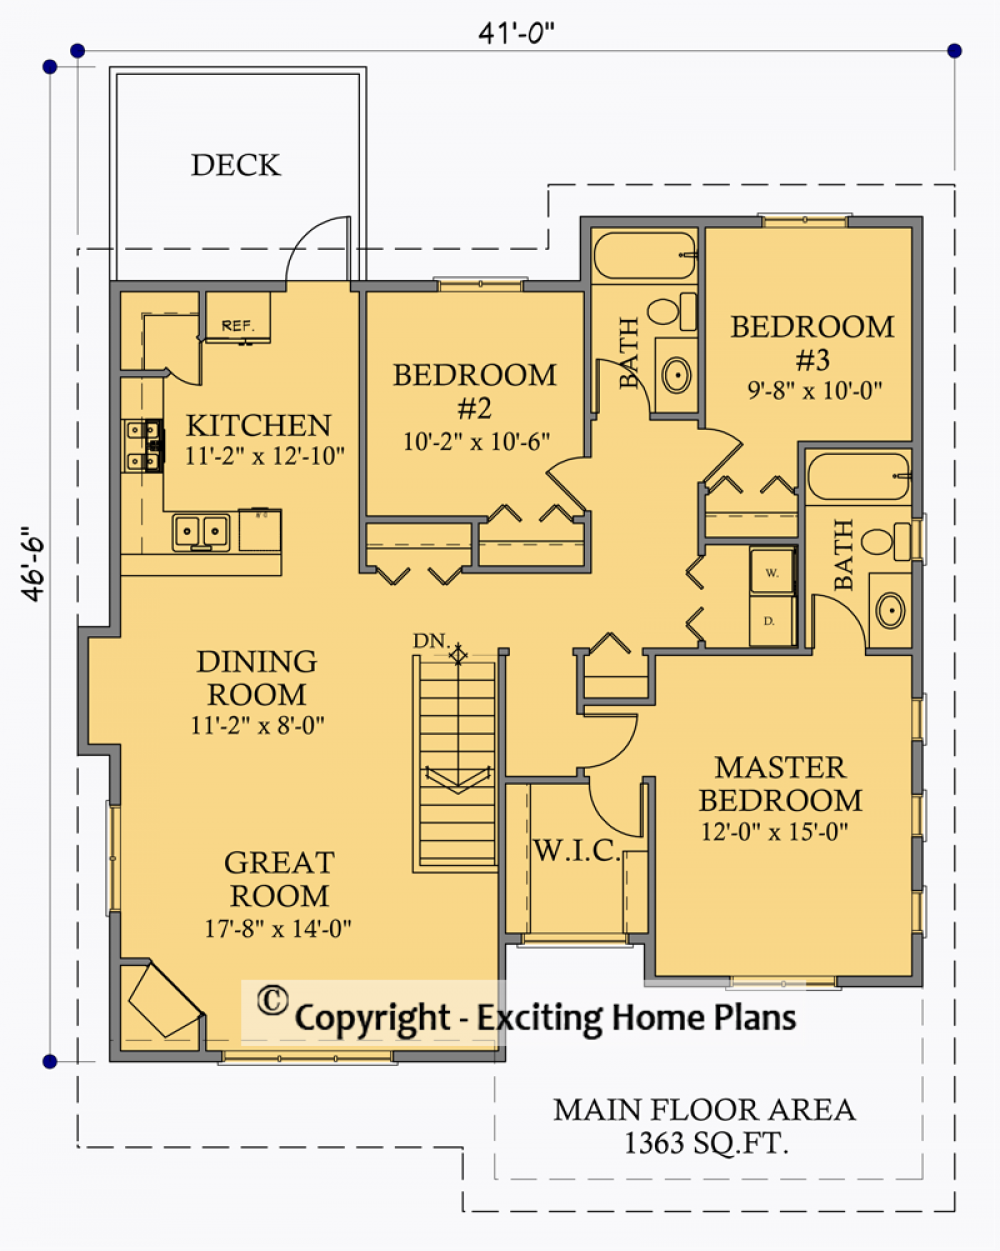 House Plan E1023-10 Lower Floor Plan